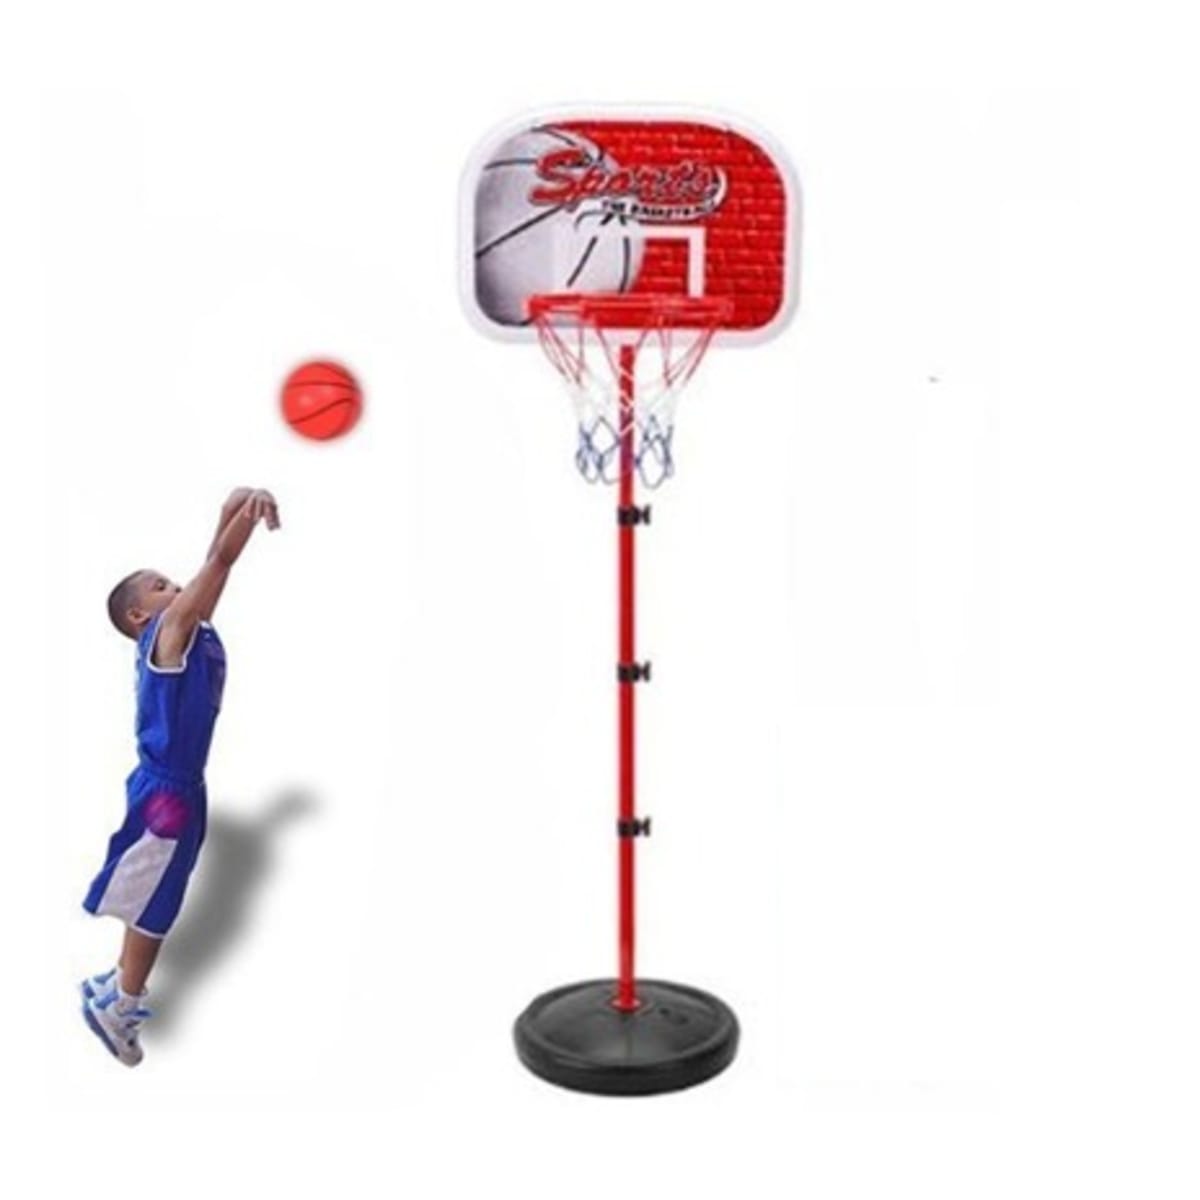 Kids Adjustable Basketball Set With Free Basketball -170cm Konga Online Shopping